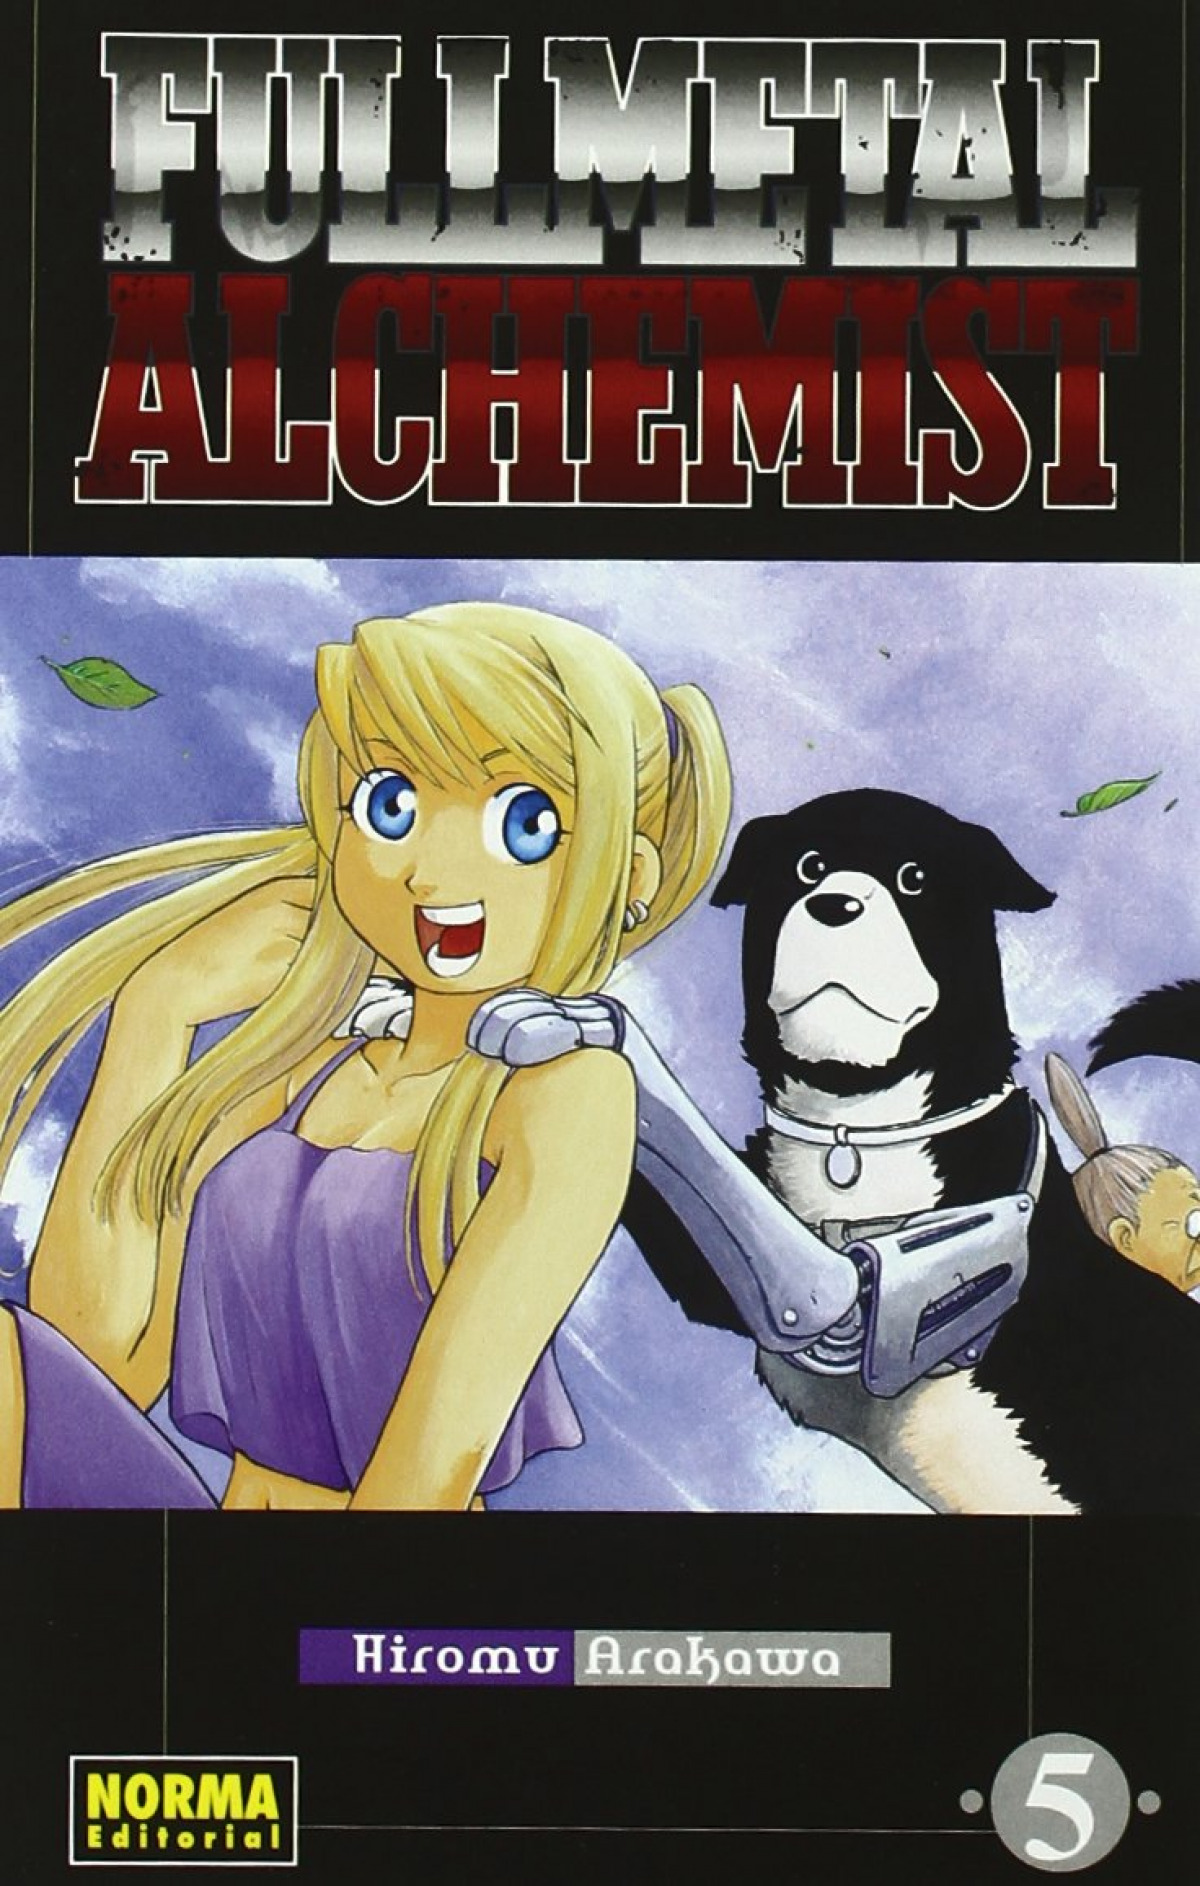 Fullmetal alchemist 5 - Arakawa, Hiromu